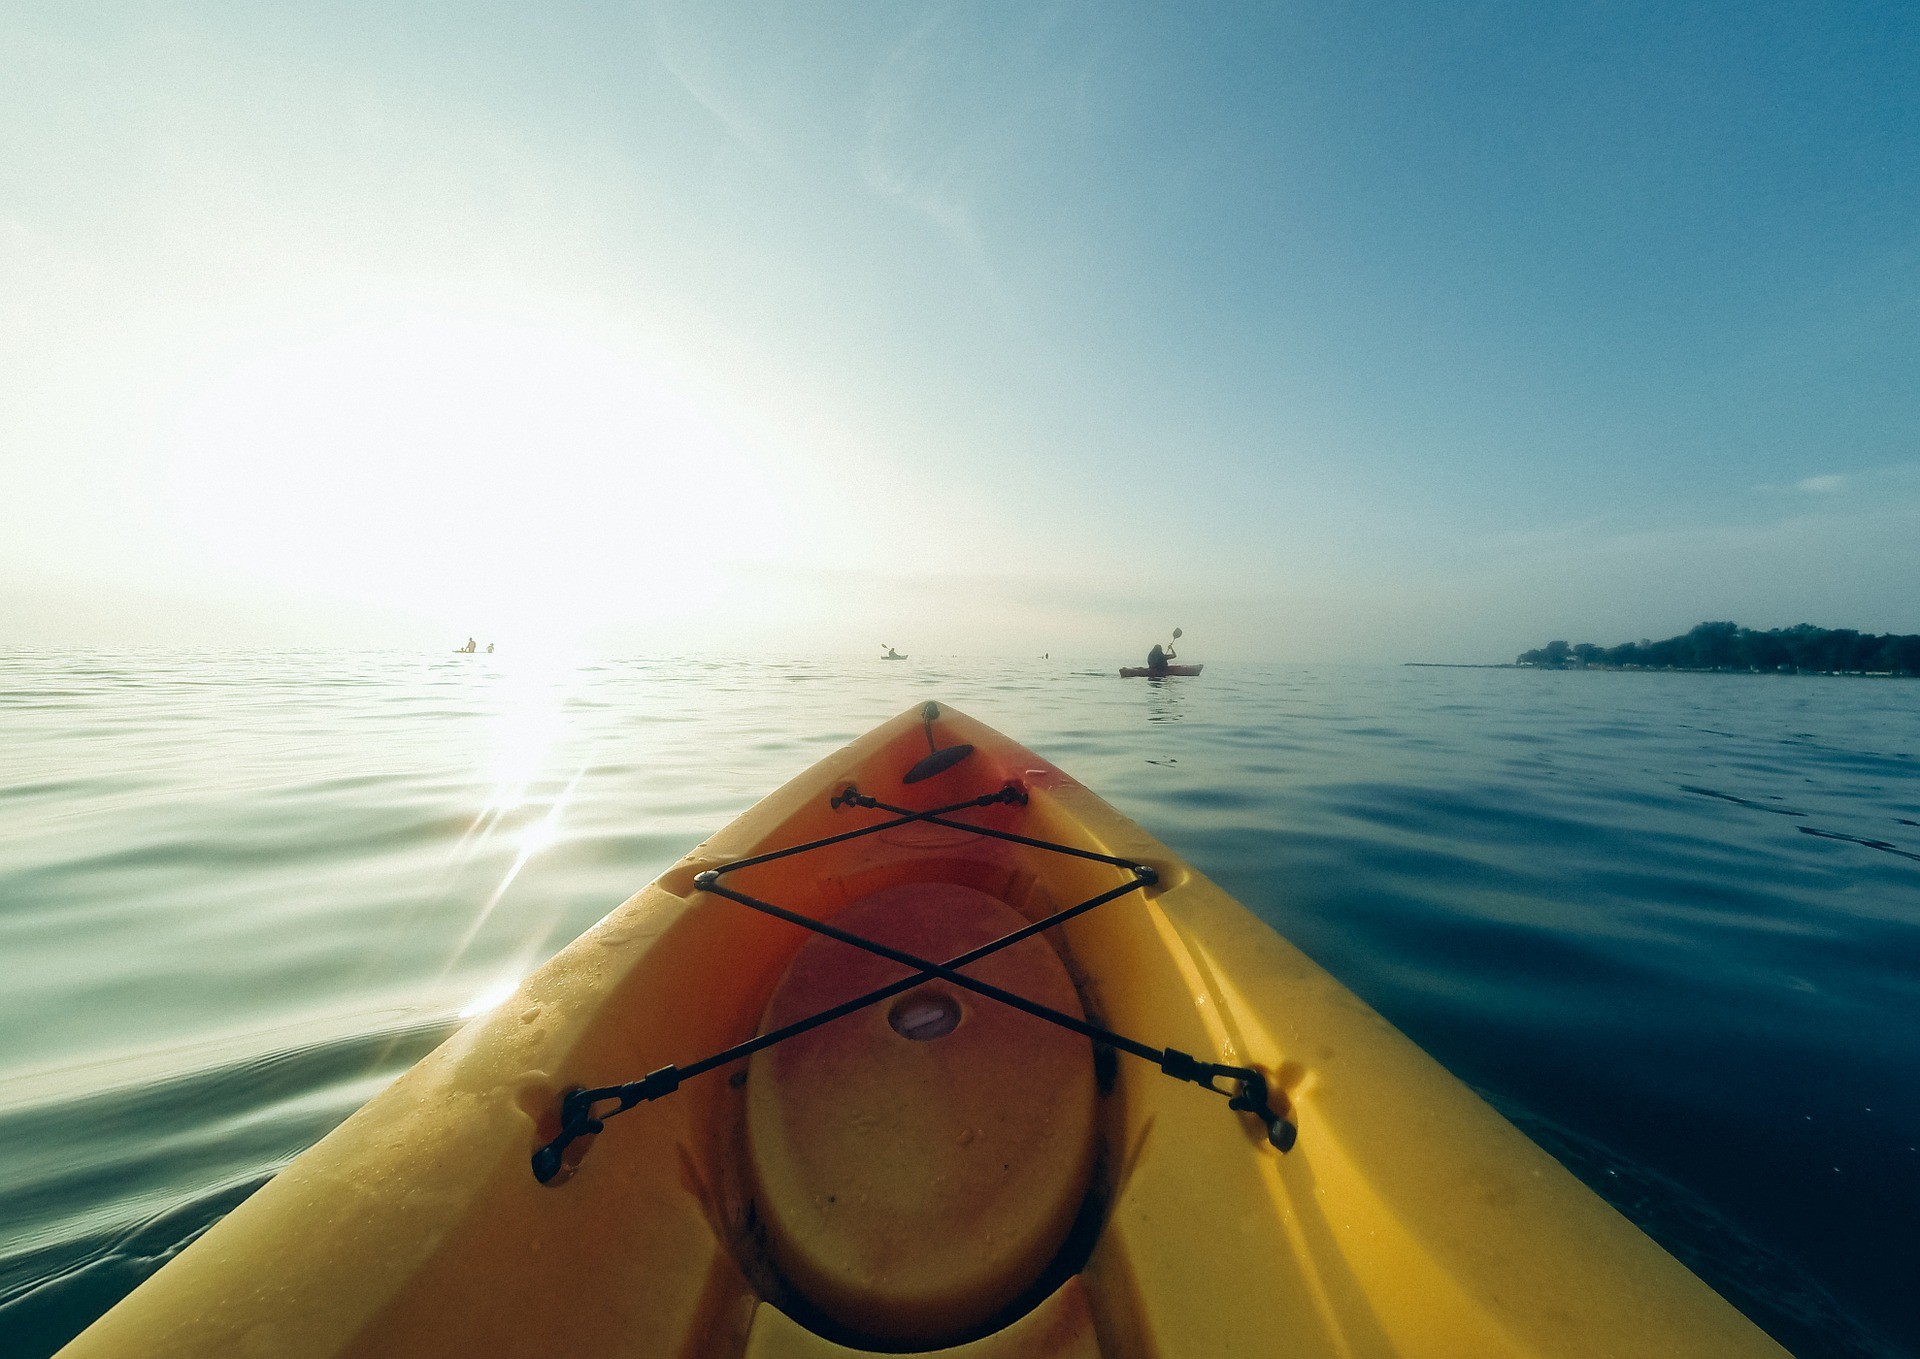     Disparition en mer : un kayak vide a été retrouvé

